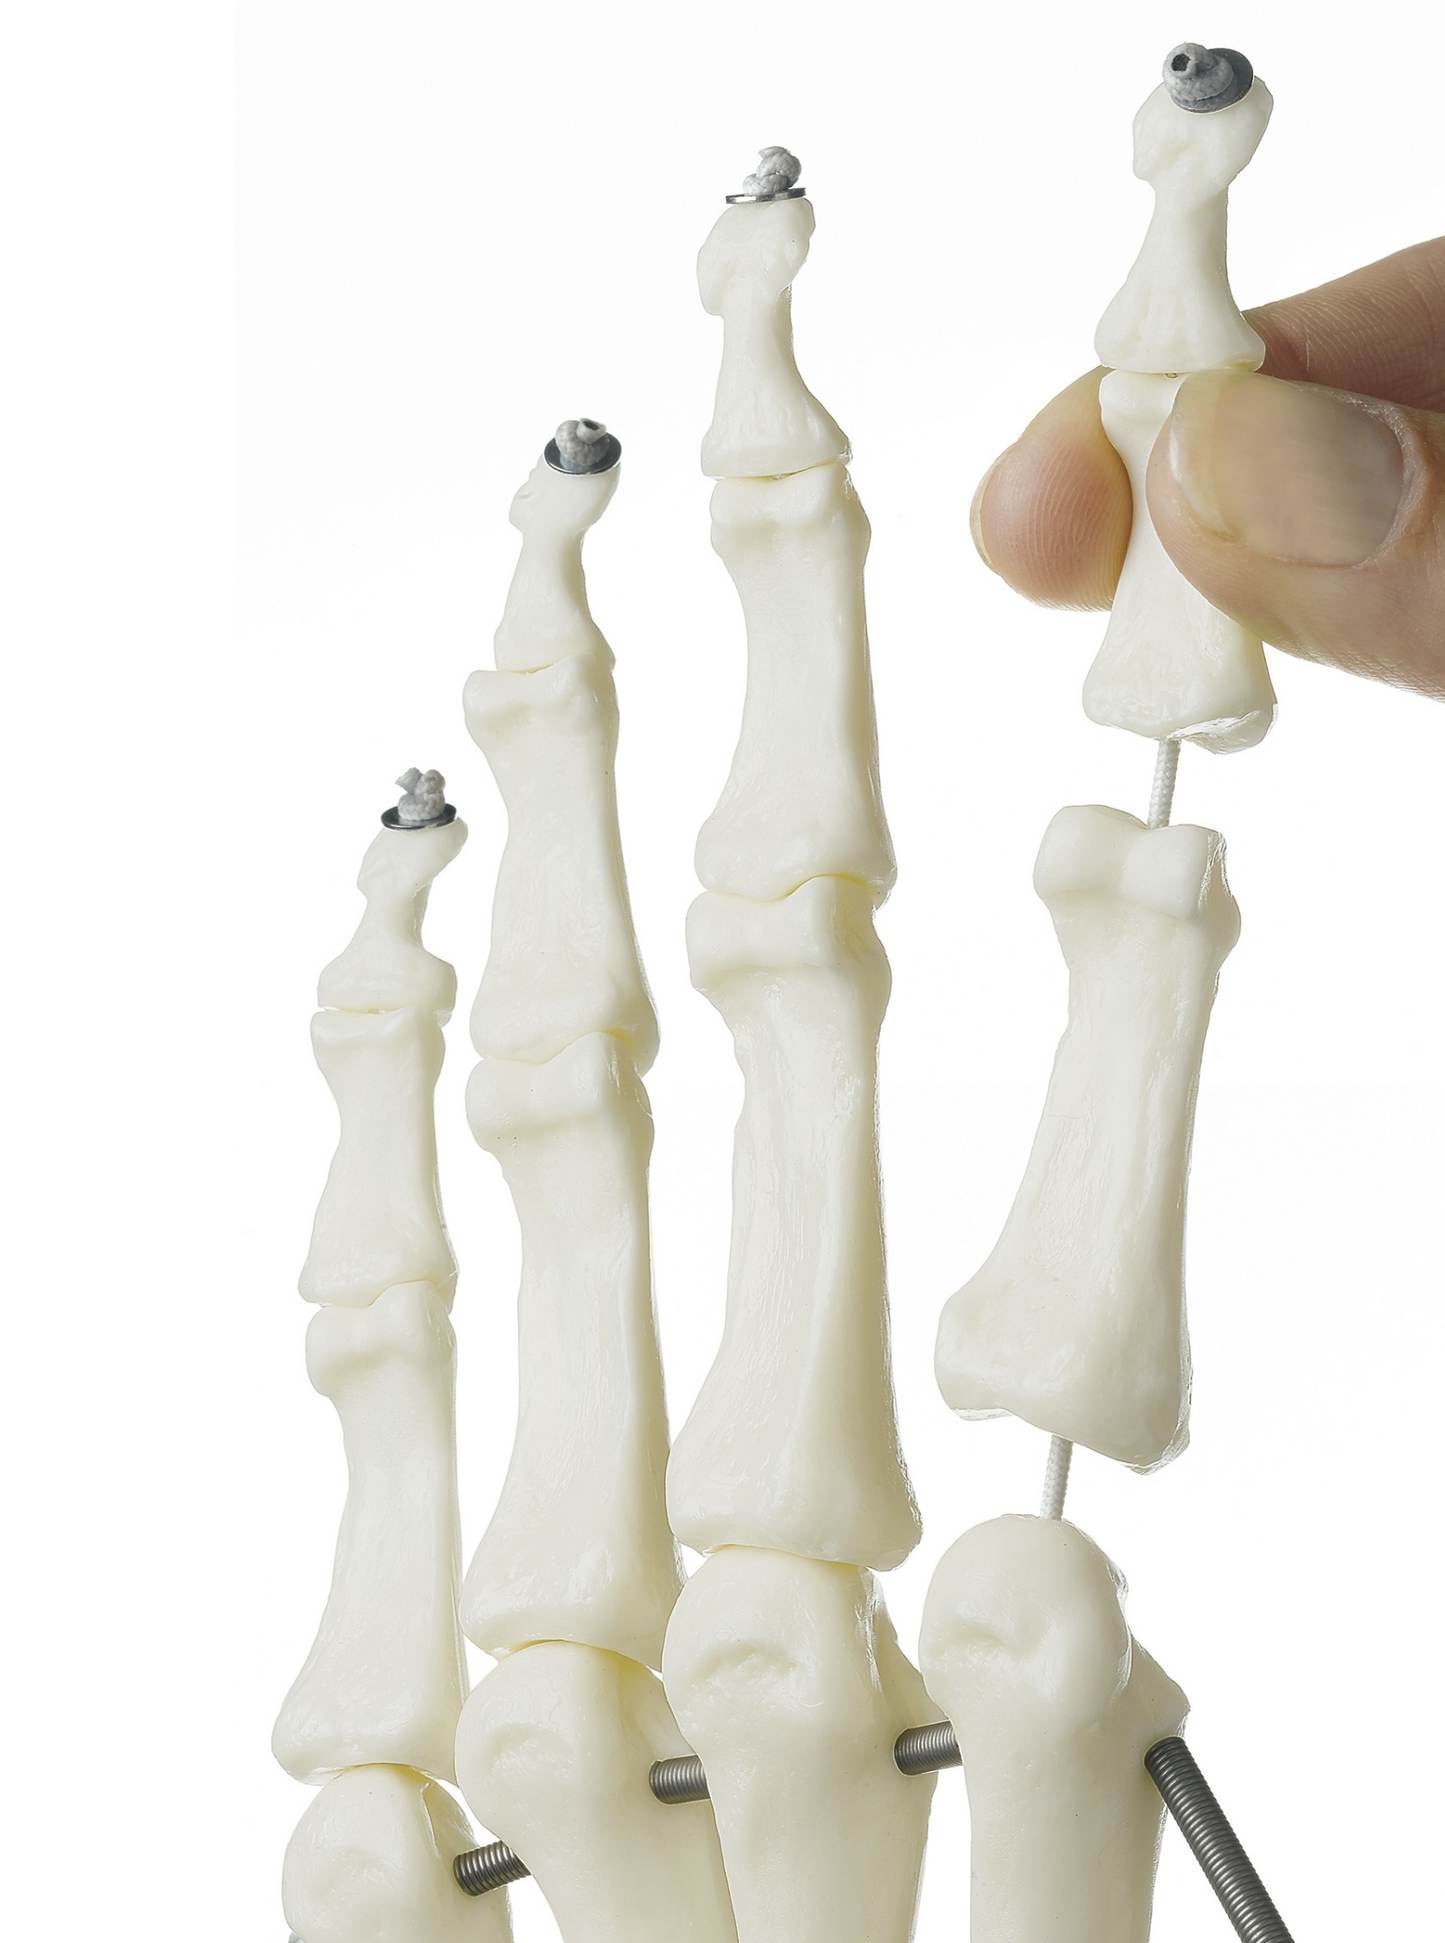 SOMSO skelettmodell av hand med en del av underarmsbenen monterade på resår